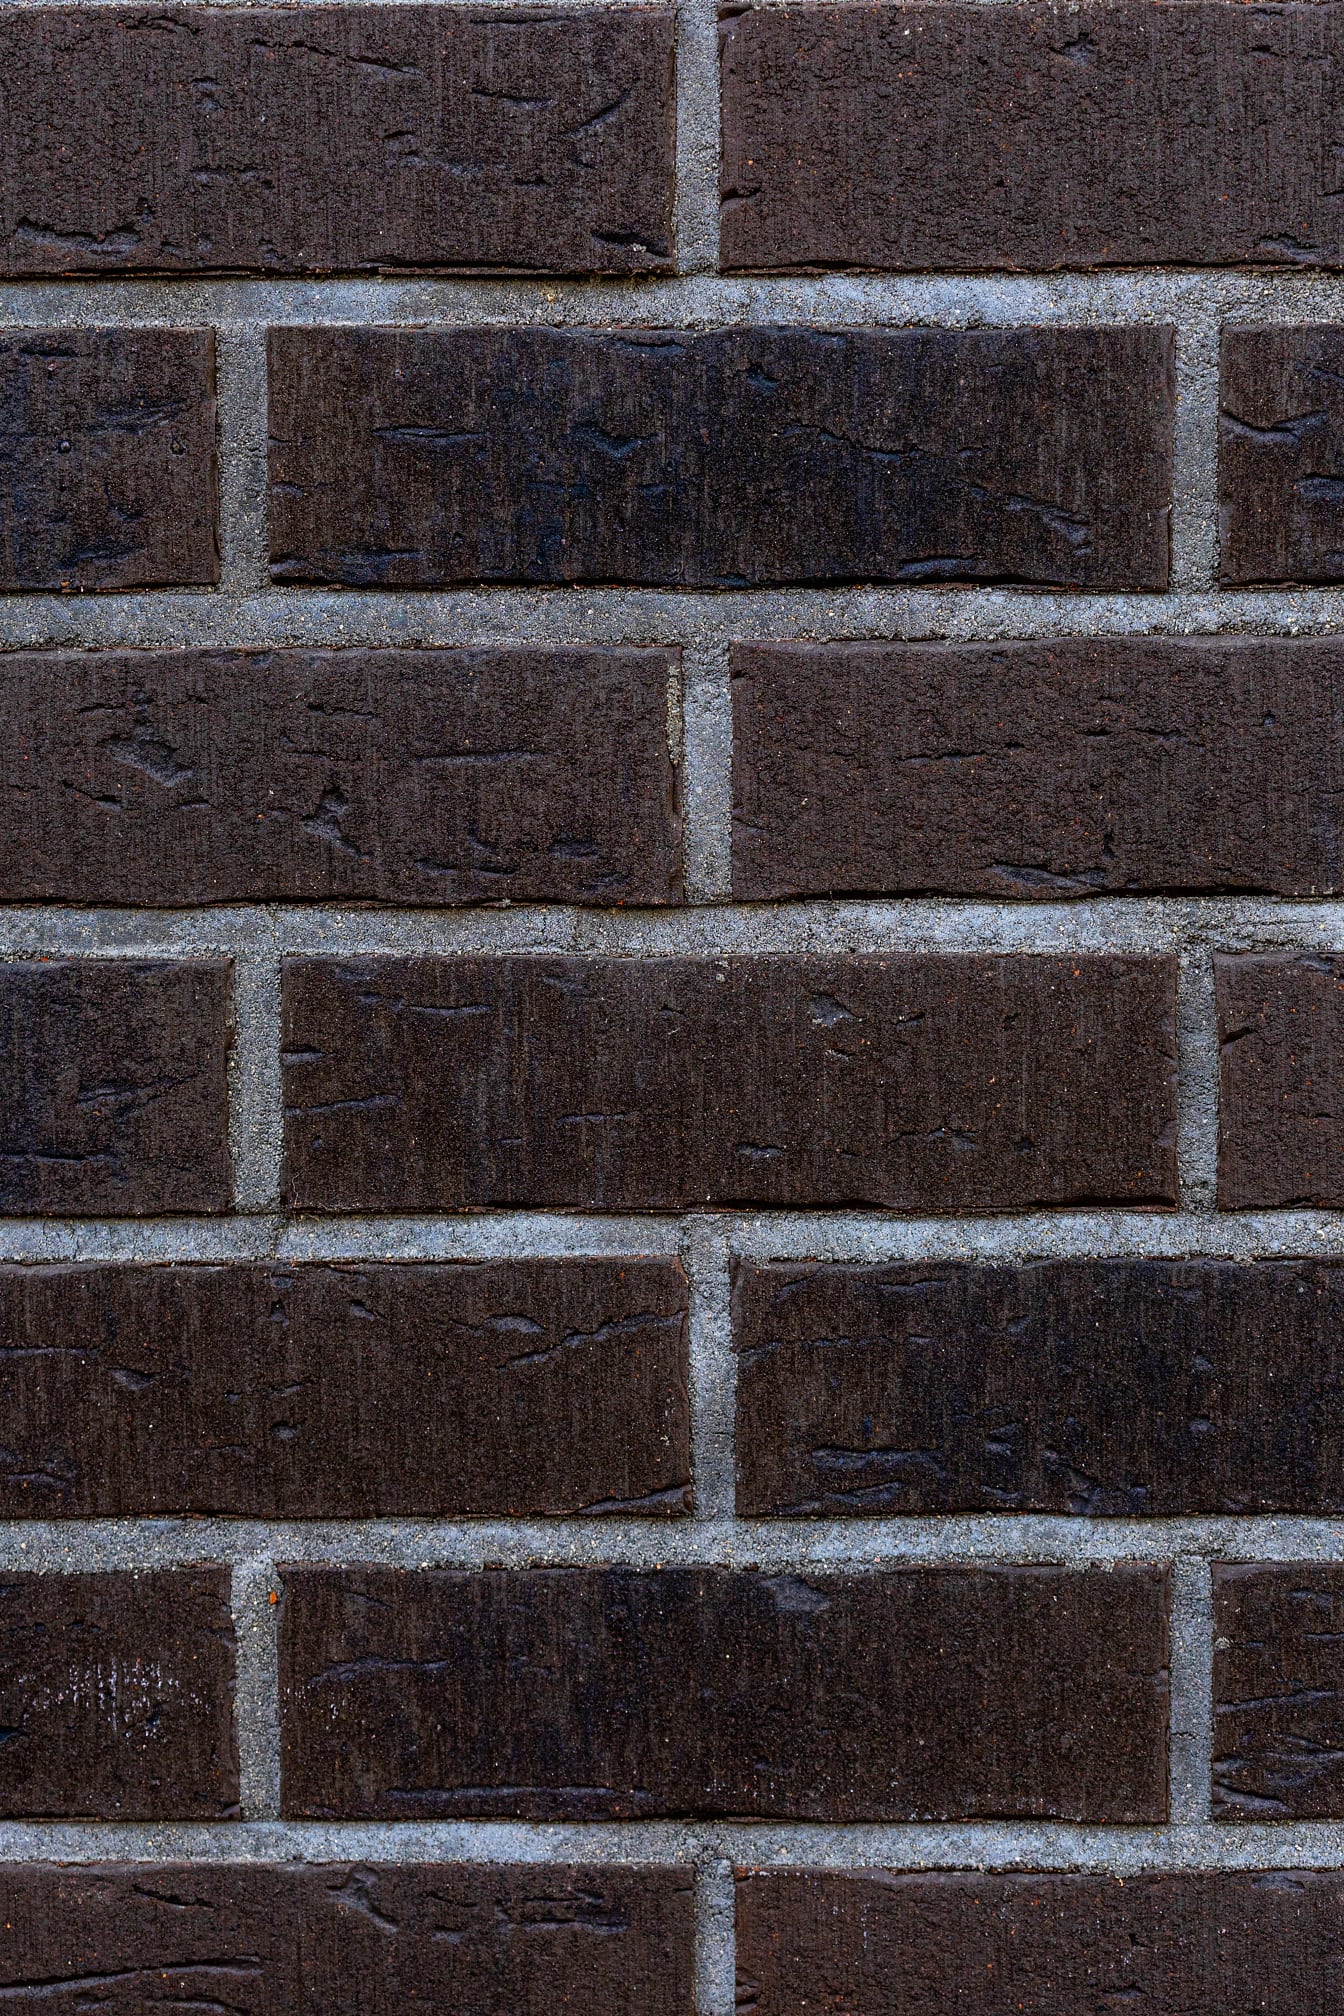 Mur med mørkebrune mursten og grå mørtel